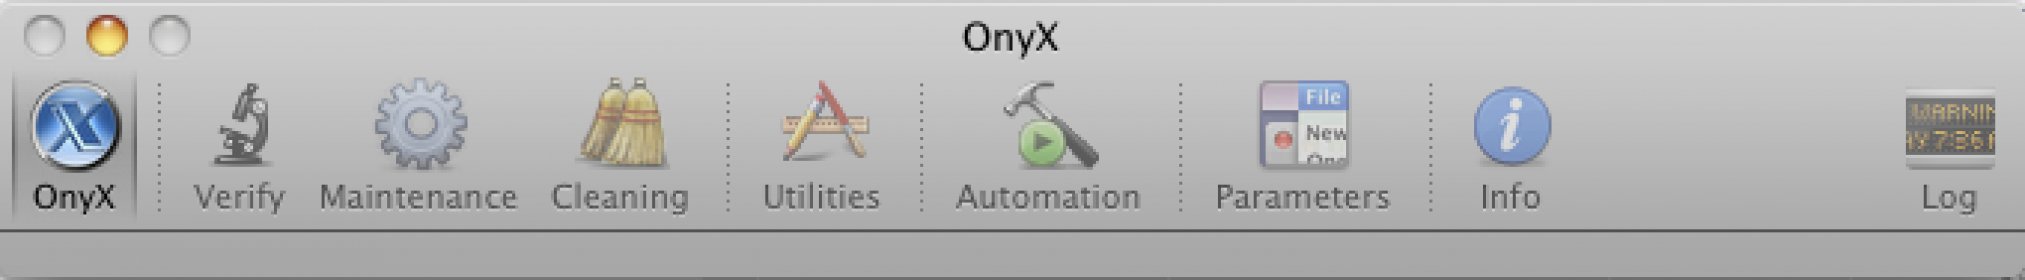 onyx 3.2 for mac